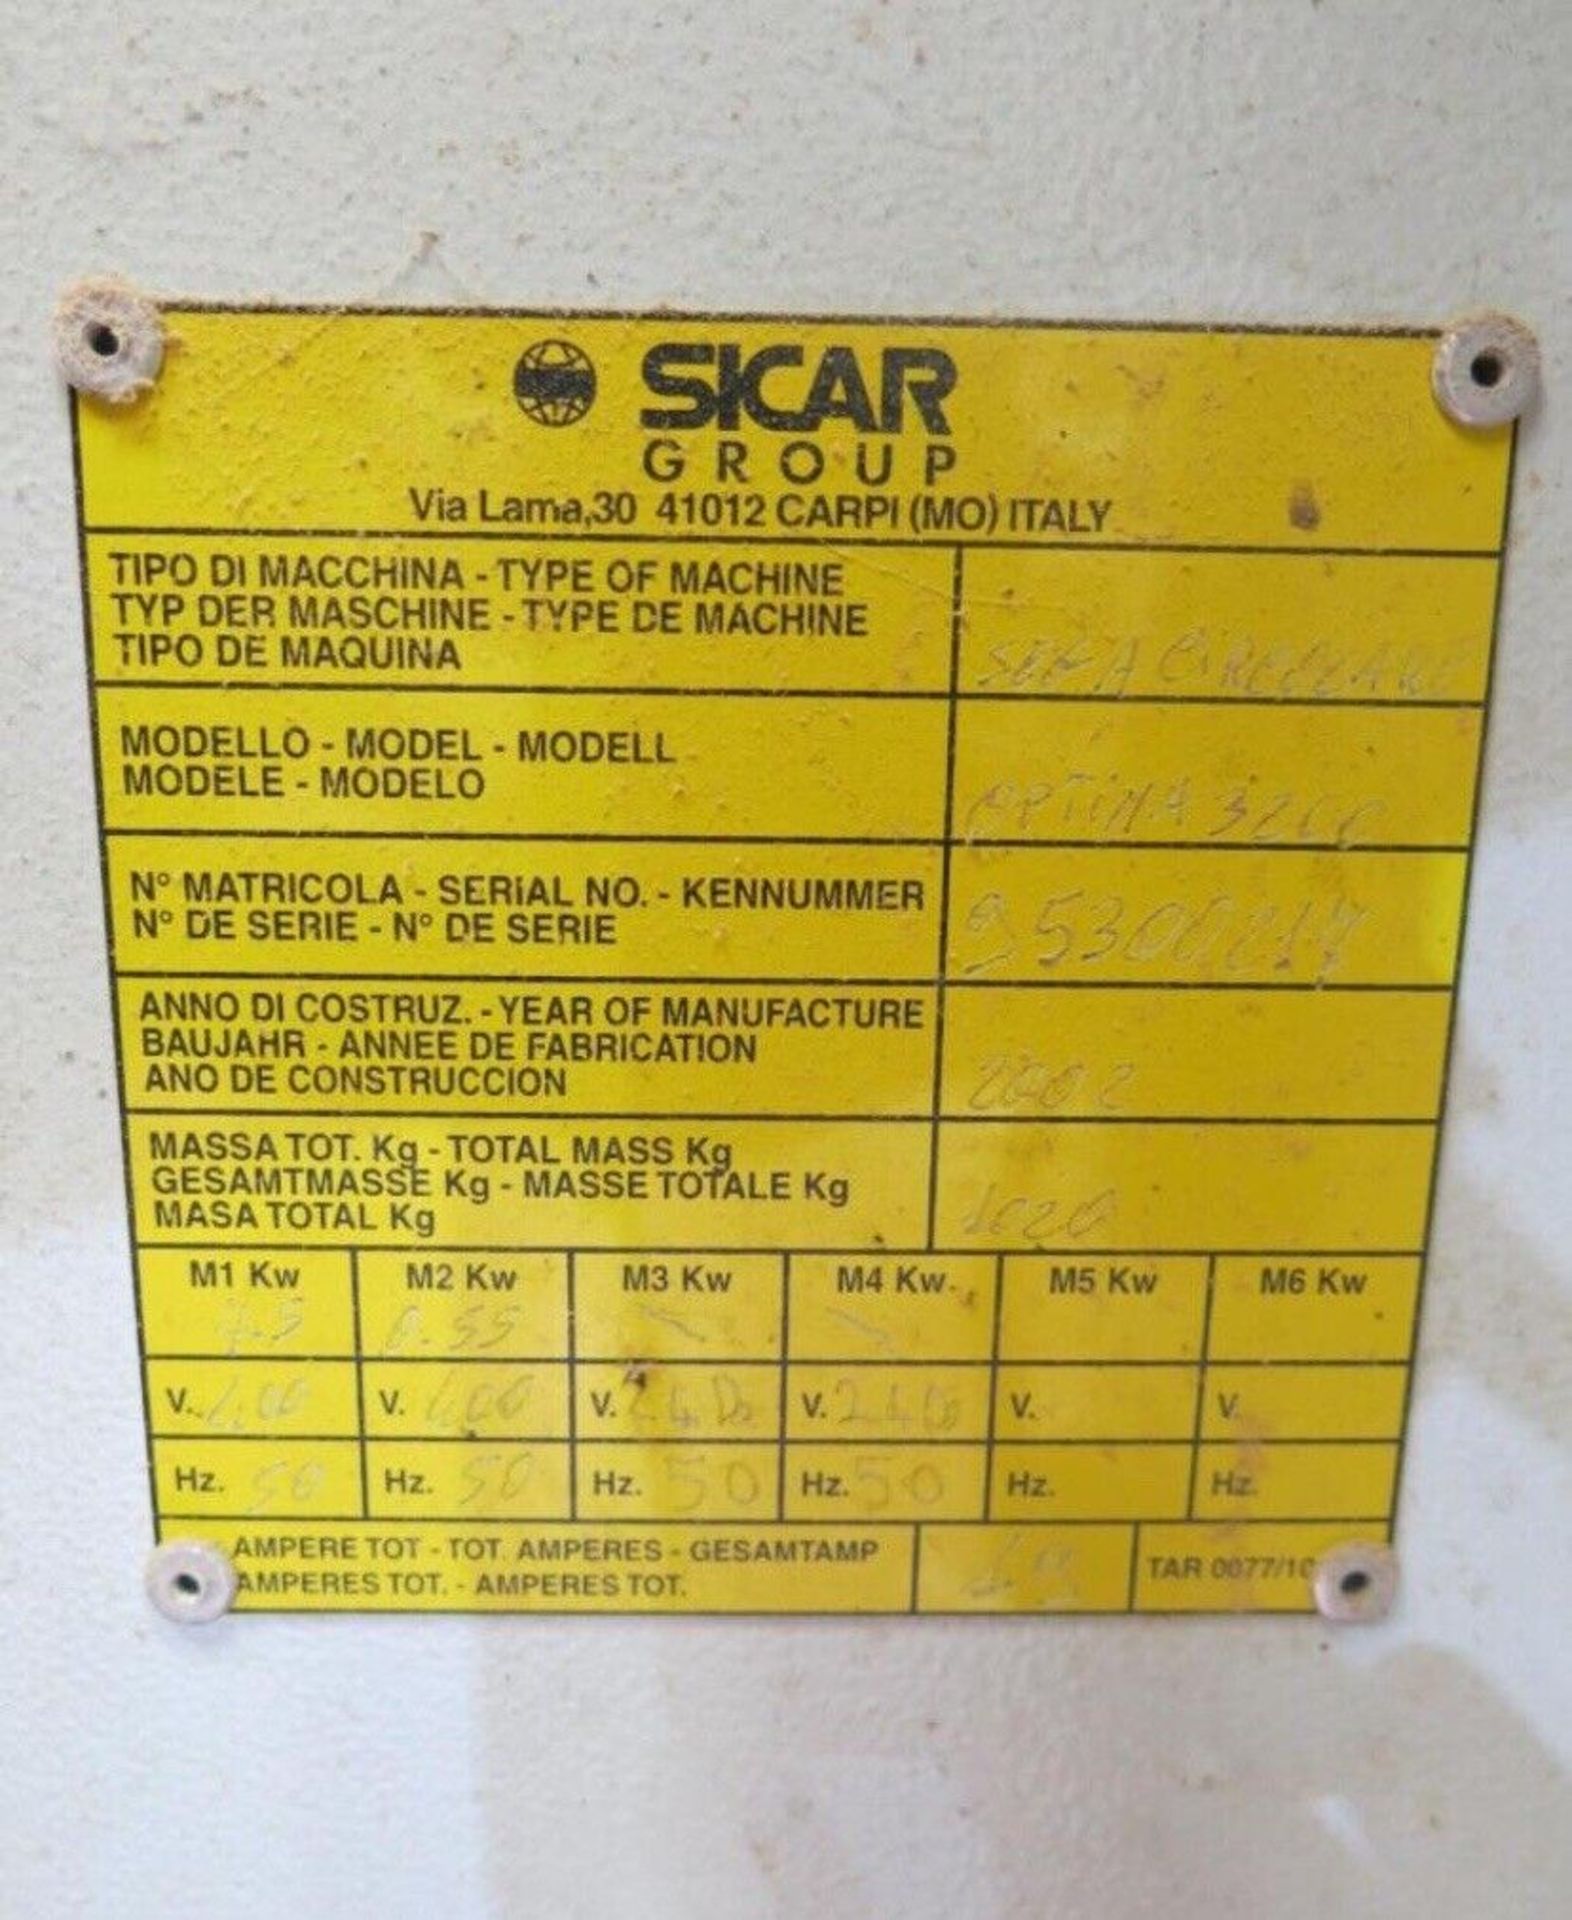 Panel Saw Sicar Optima 3200 3.2 Meter Bed With Scoring Unit Sheet Saw Rip Saw - Image 8 of 12